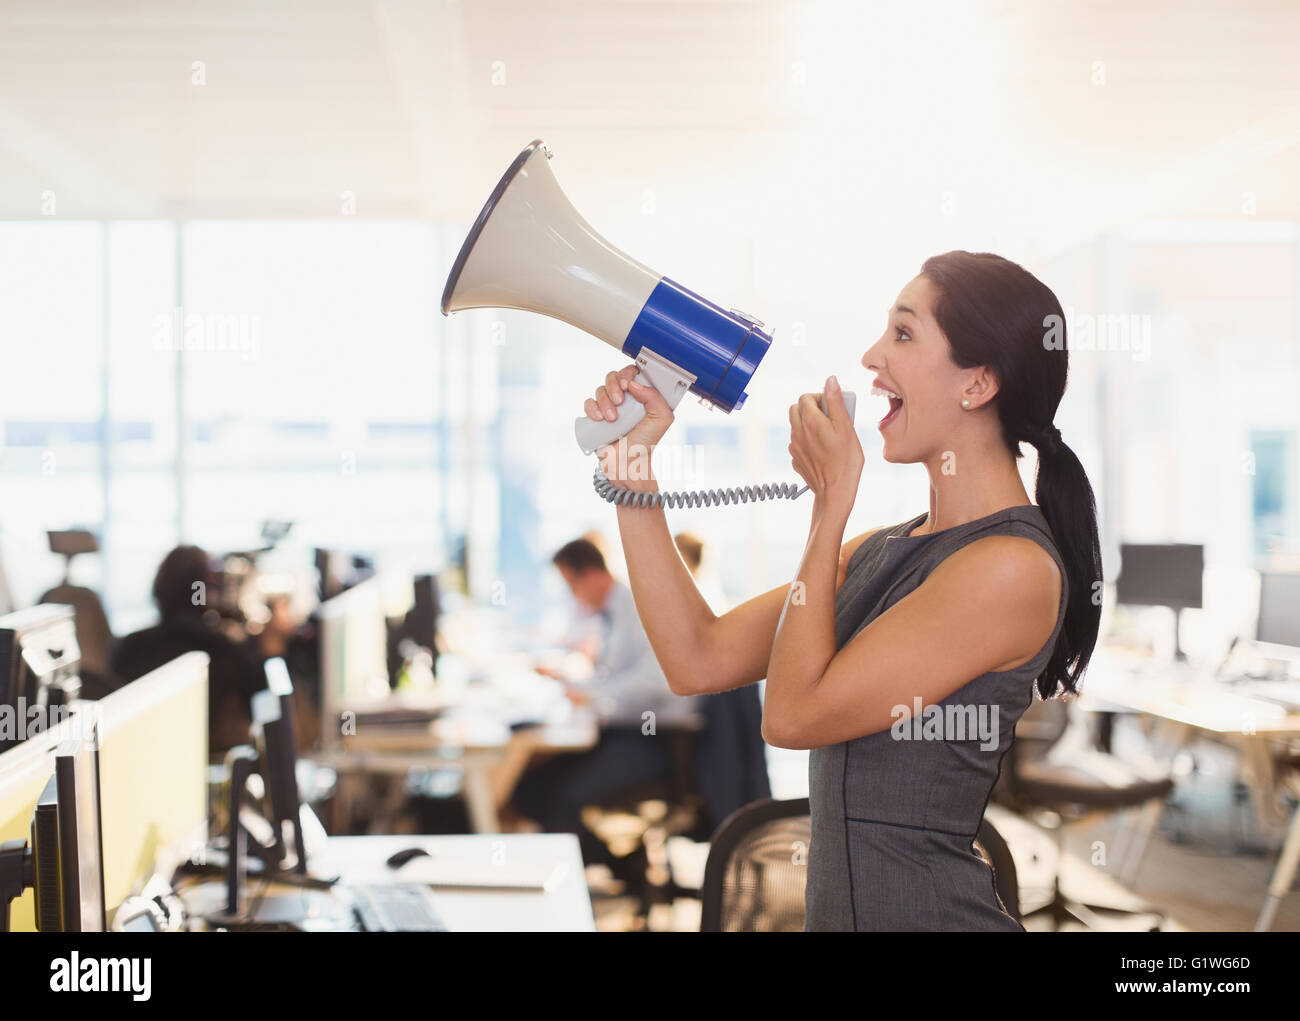 Businesswoman using megaphone exubérante in office Banque D'Images